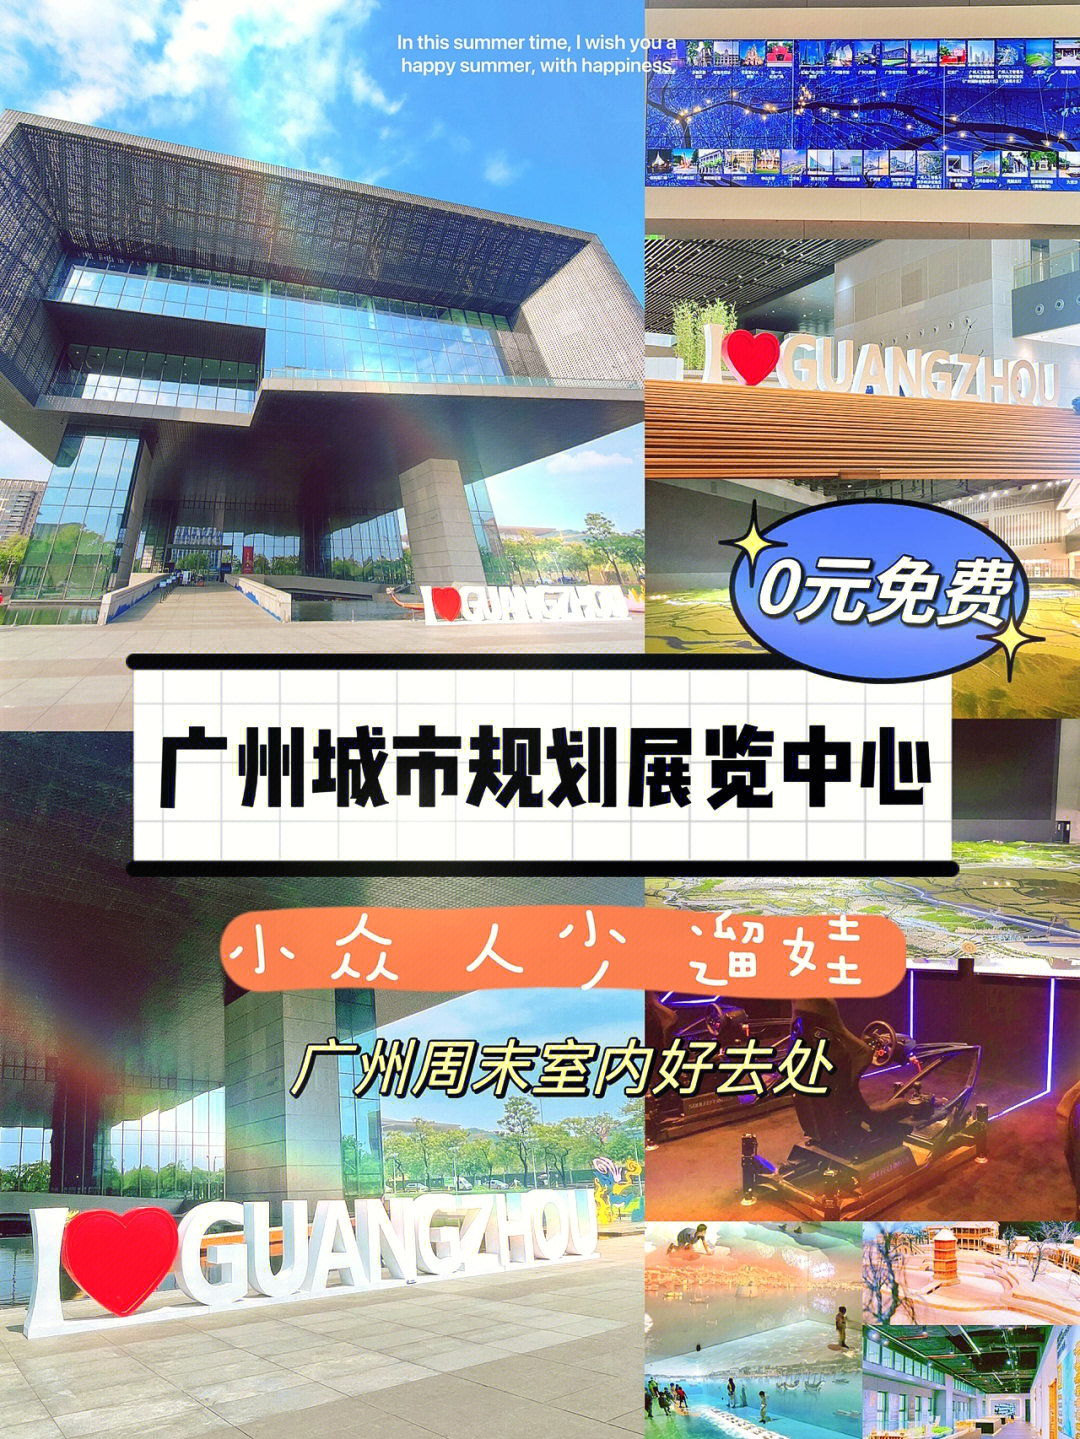 广州旅游新地标免费参观城市规划展览中心